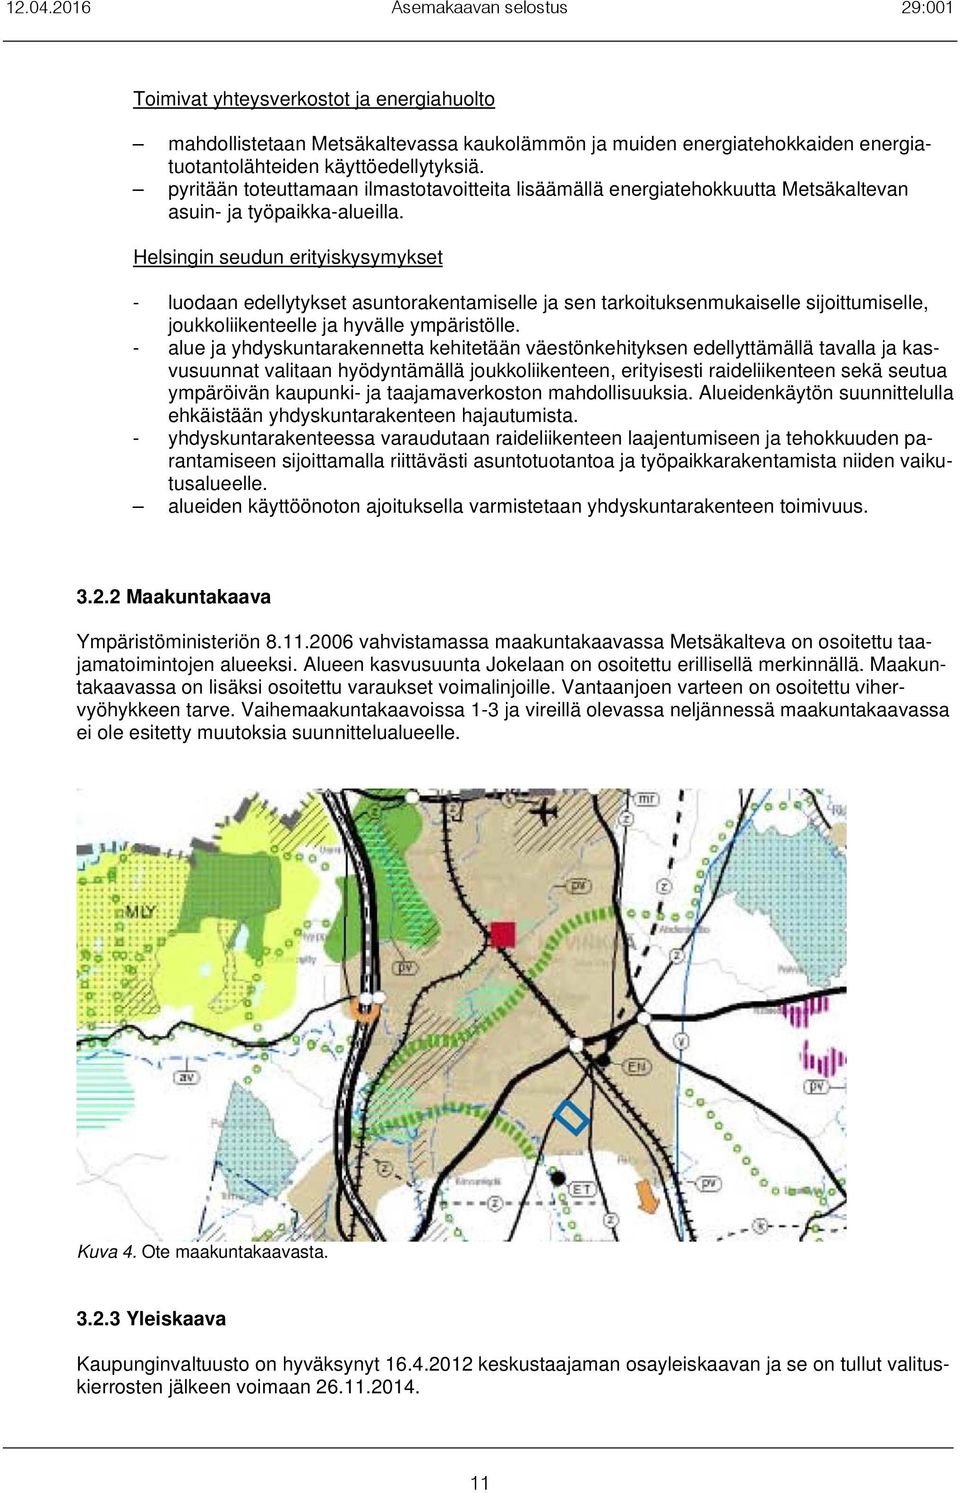 Helsingin seudun erityiskysymykset - luodaan edellytykset asuntorakentamiselle ja sen tarkoituksenmukaiselle sijoittumiselle, joukkoliikenteelle ja hyvälle ympäristölle.